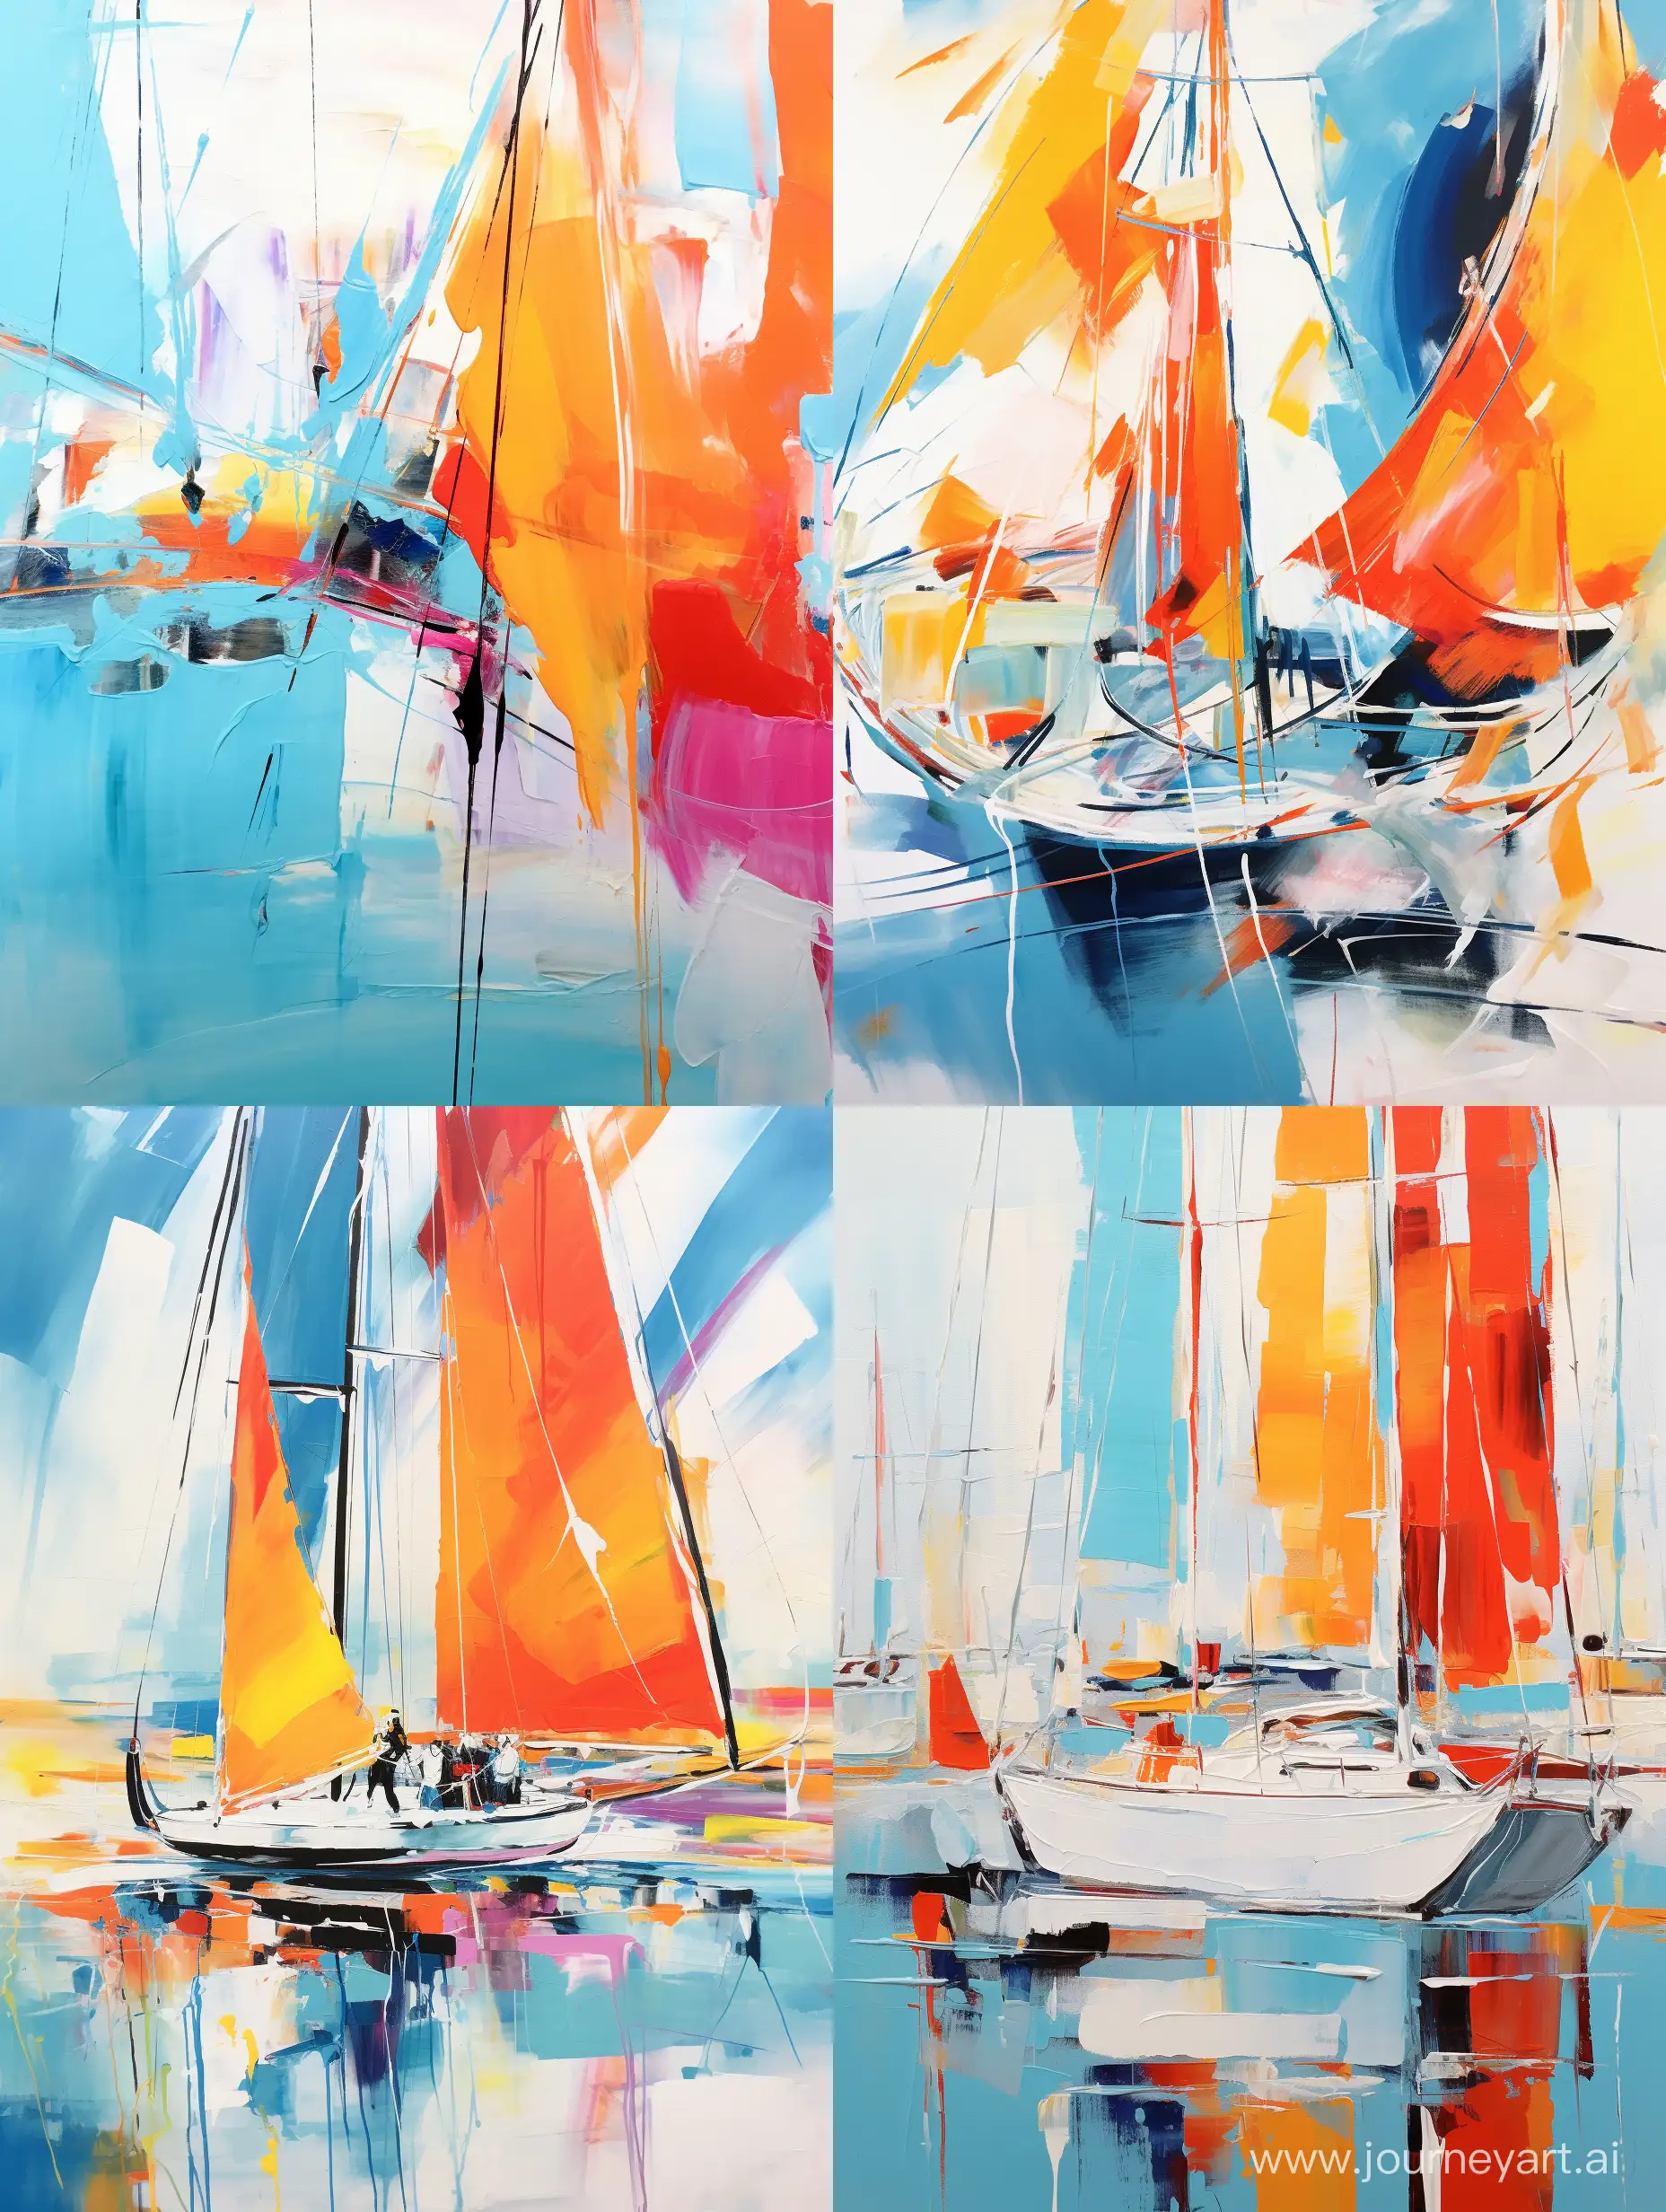 живопись в стиле Karen Stamper яхты в марине бирюзовый цвет, яркие цвета, оранжевый, желтый, черный, красный,  белый в стиле абстракции